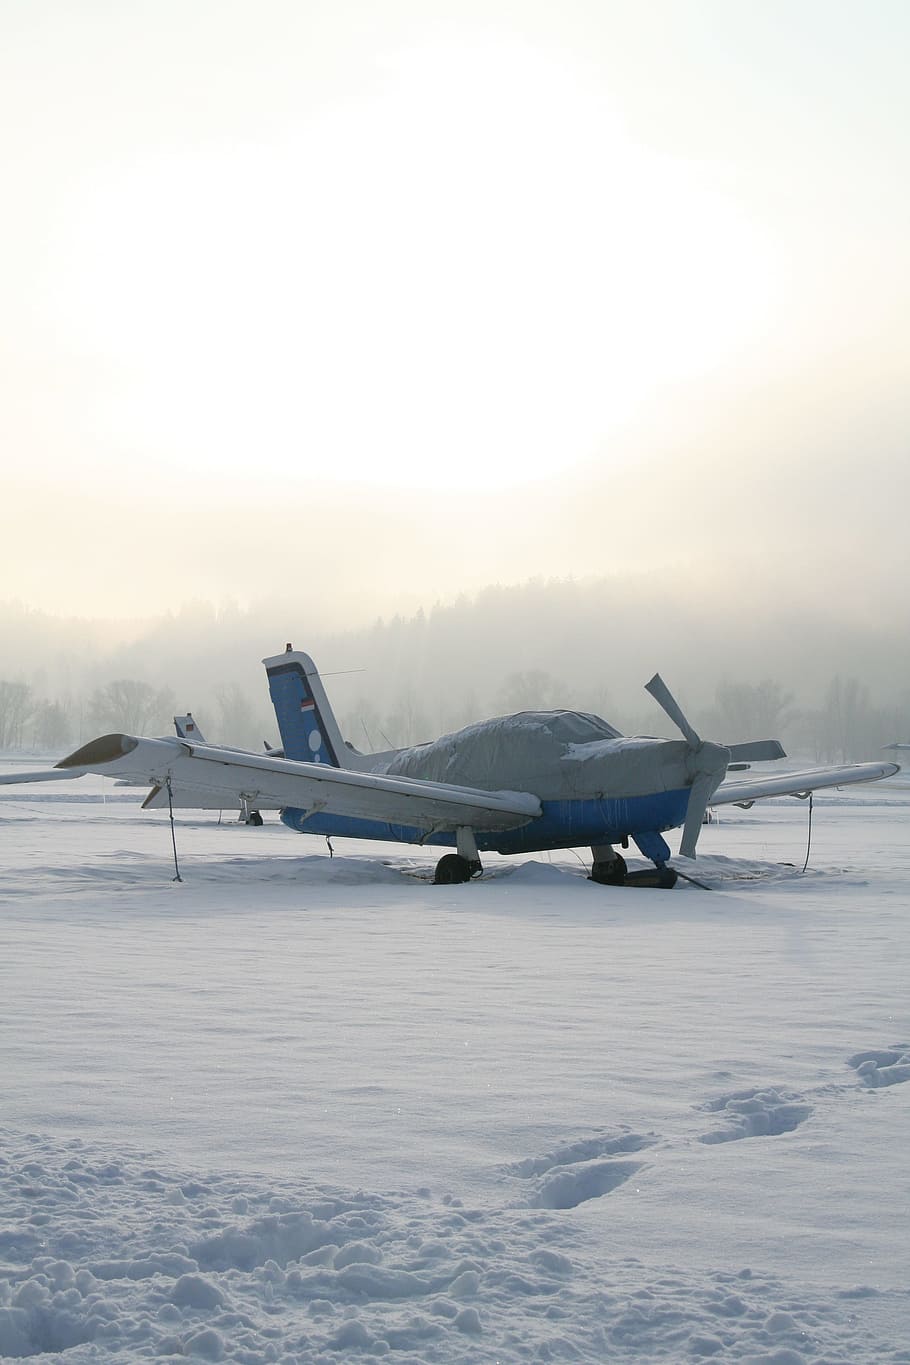 Avión, hélice, avión de hélice, M17, avión deportivo, invierno, avioneta, temperatura fría, vehículo aéreo, aire libre